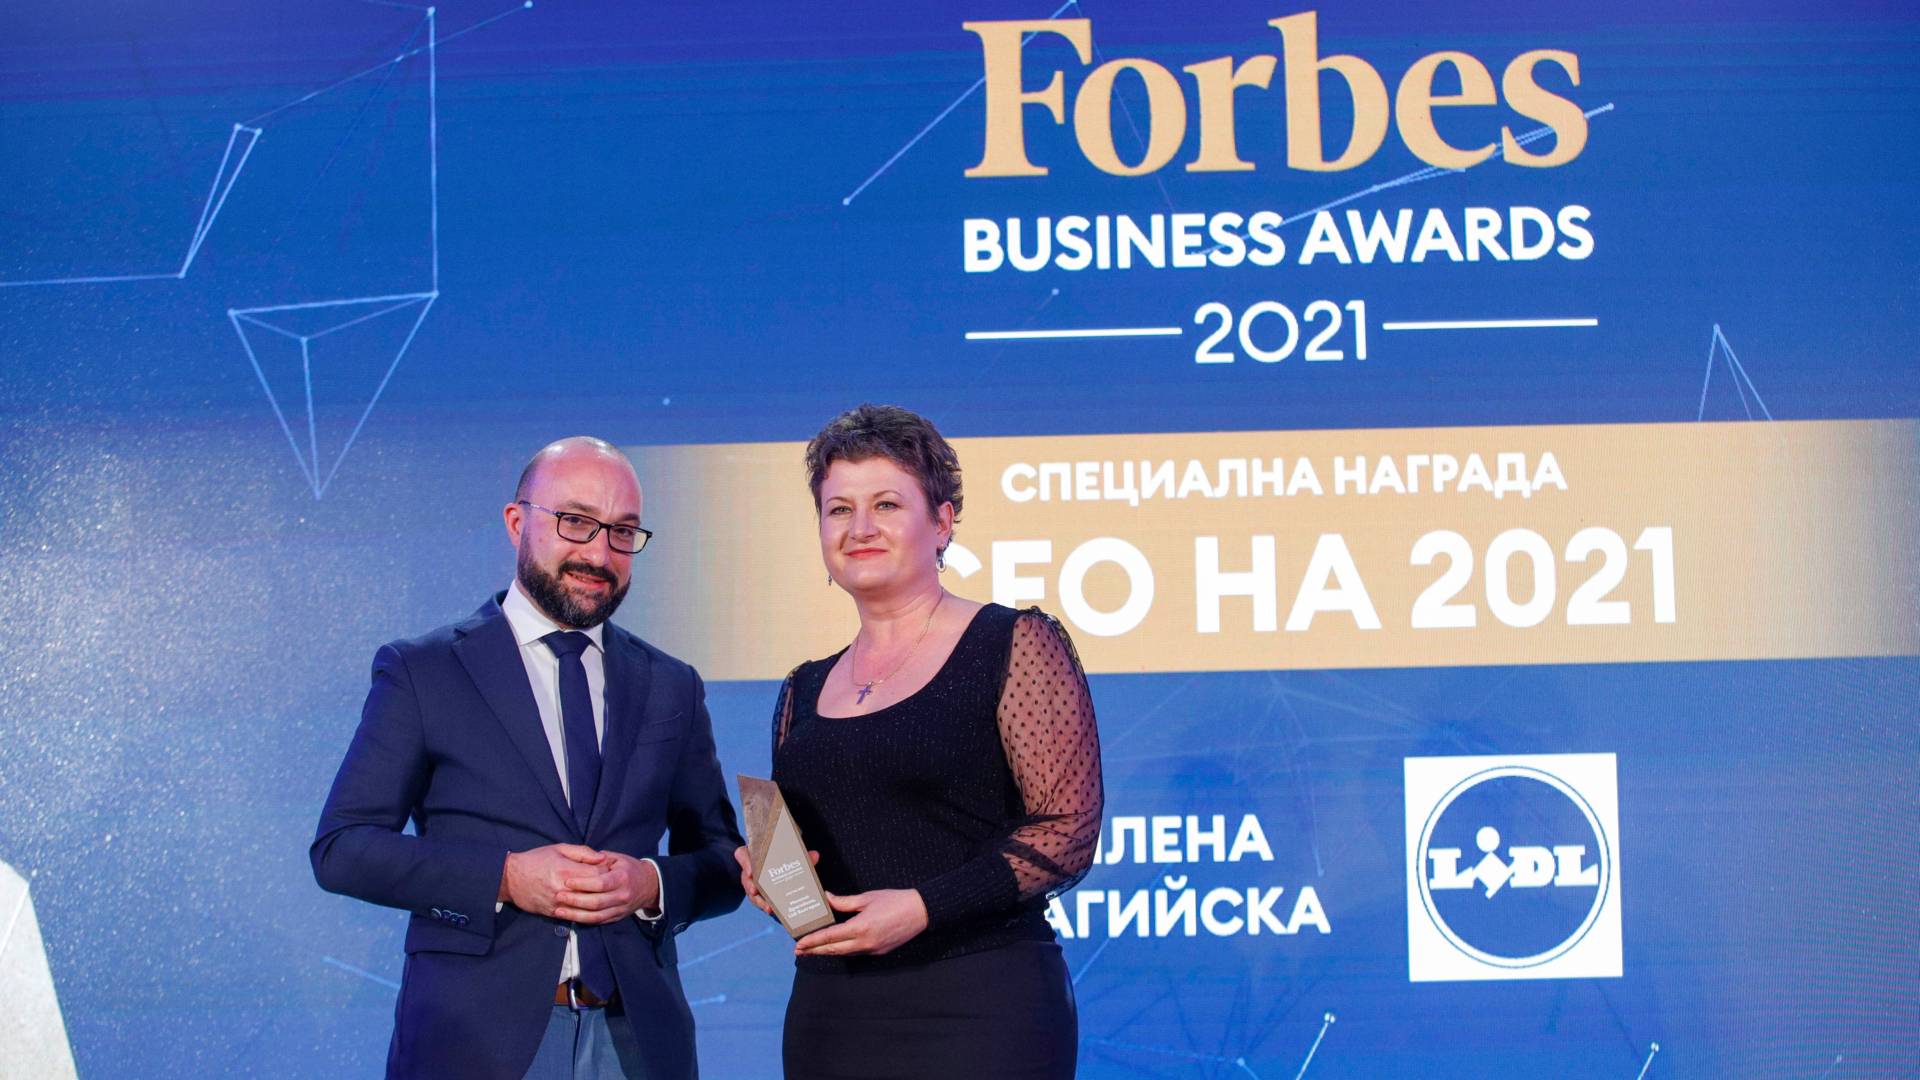 Главният изпълнителен директор Милена Драгийска получи наградата „CEO на 2021“ от Forbes Business Awards